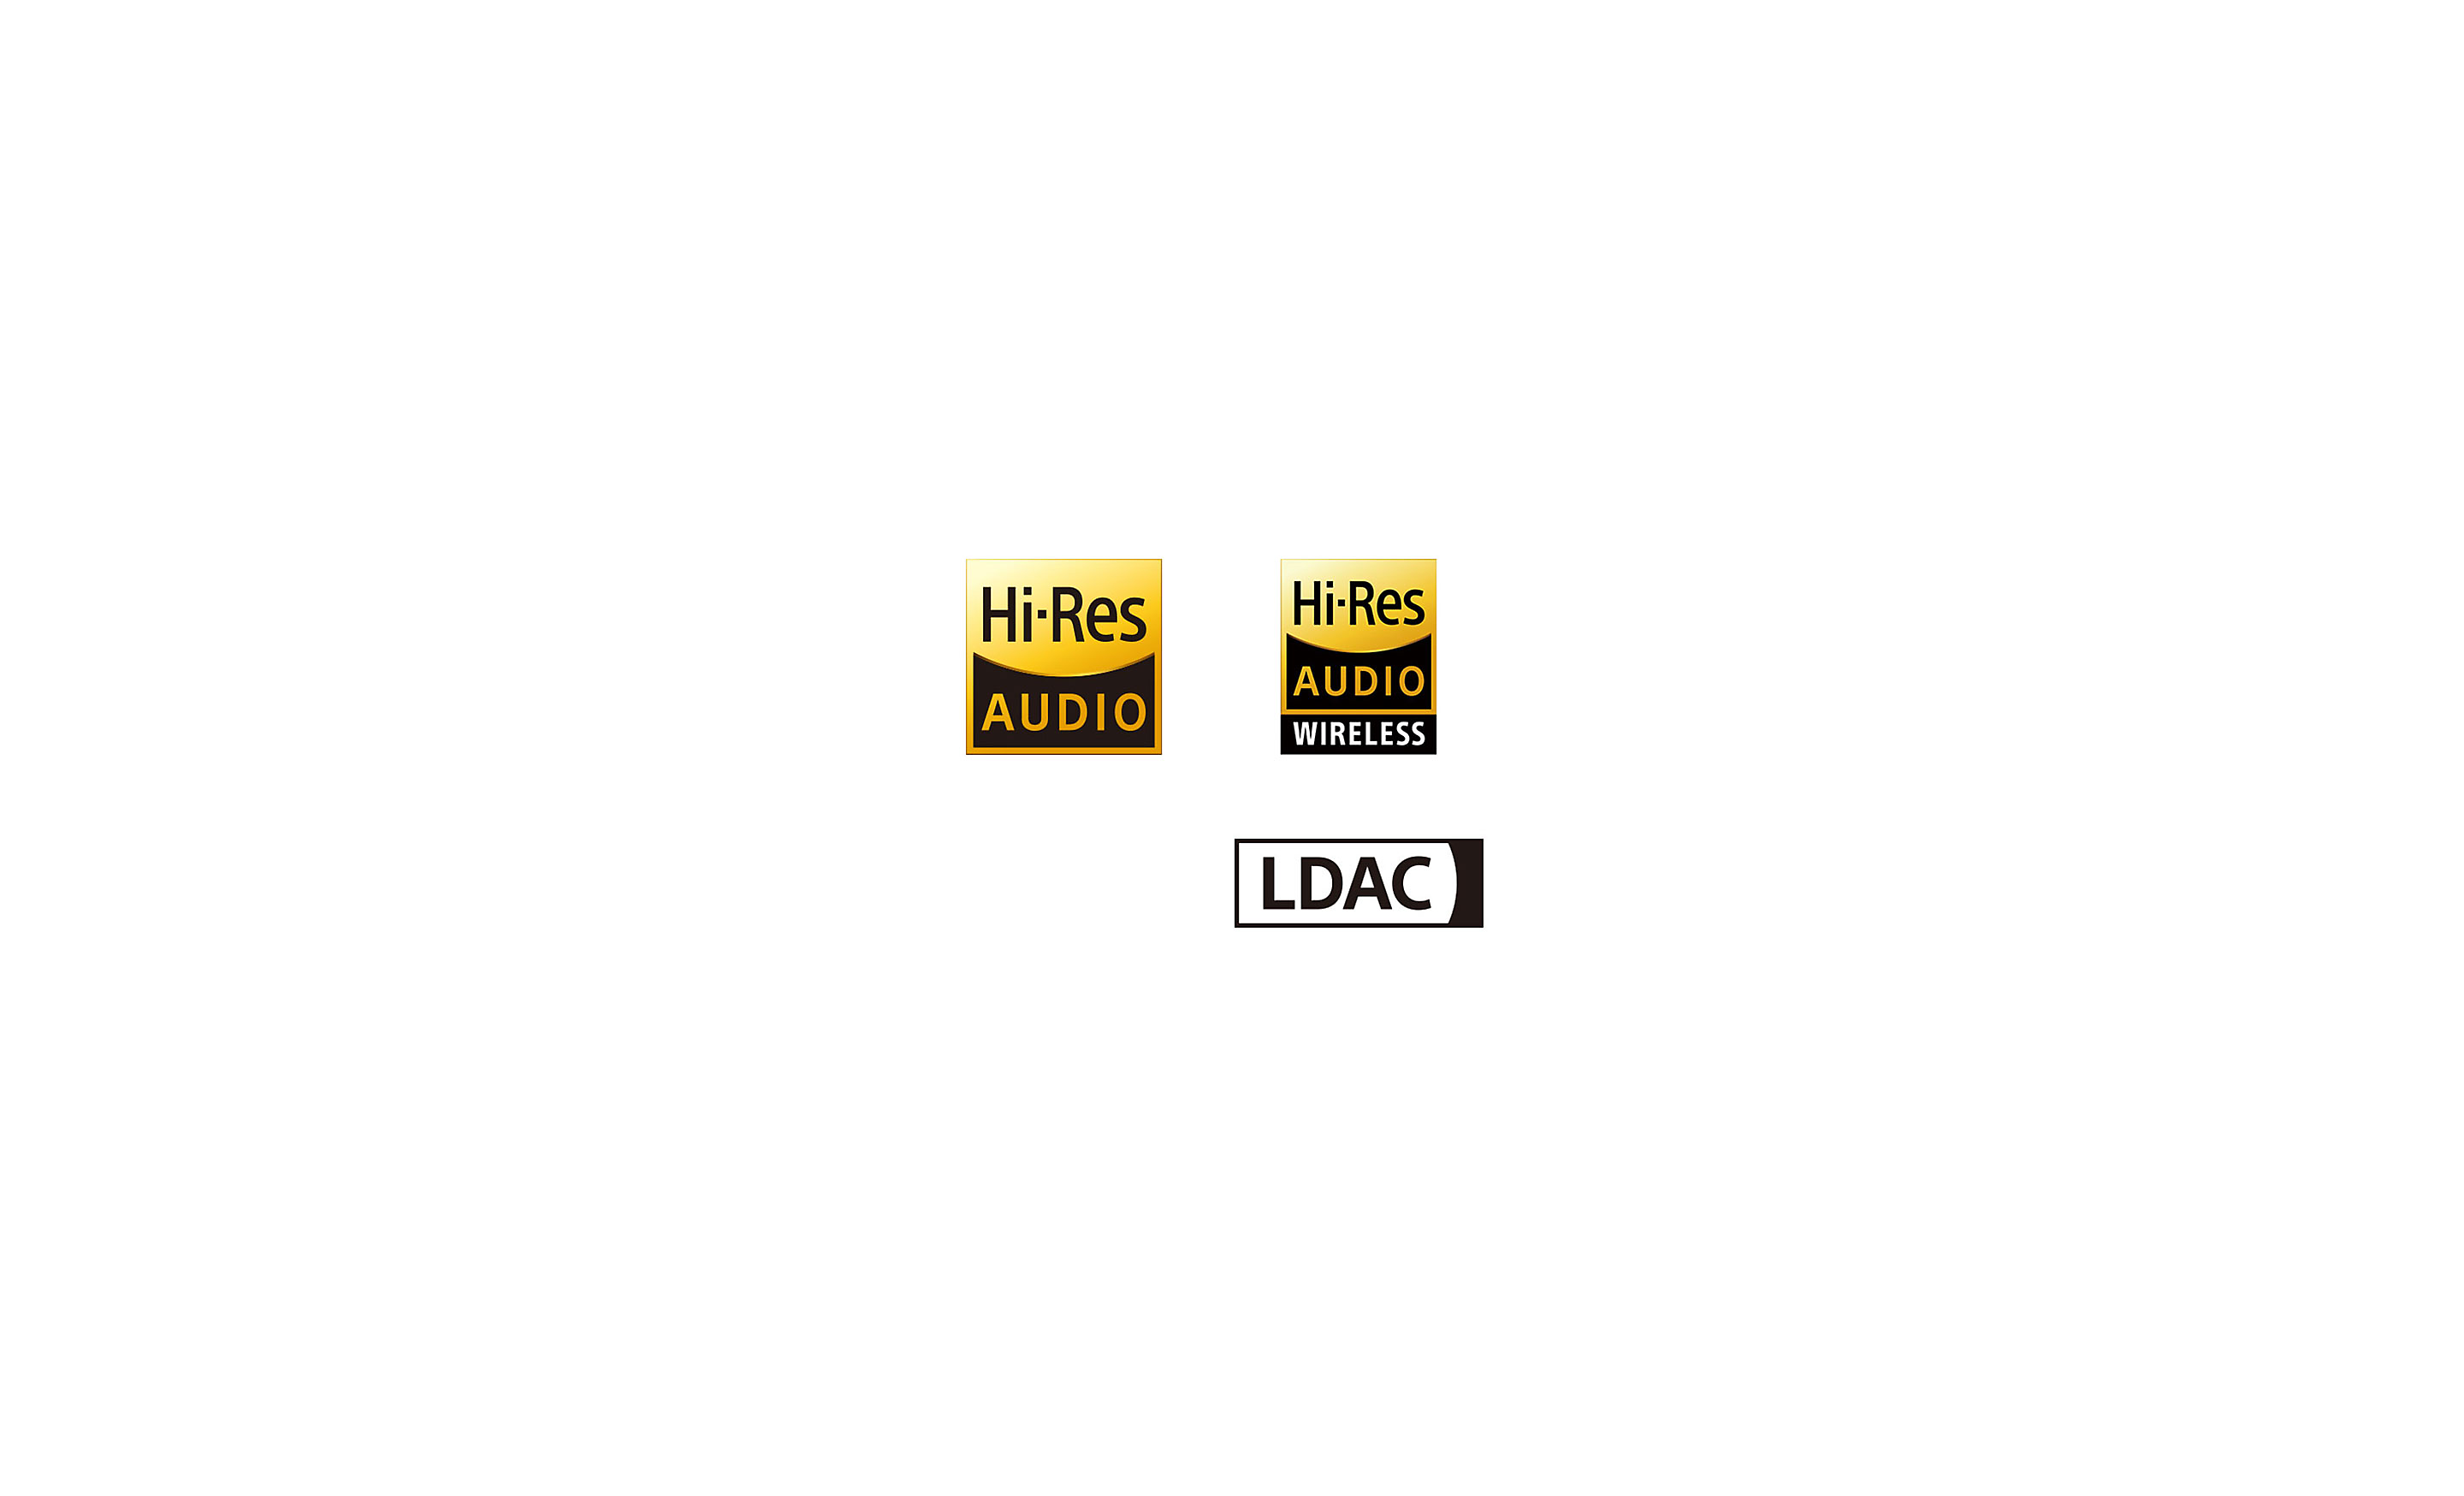 Logos Hi-Res Audio, Hi-Res Audio sans fil et LDAC.